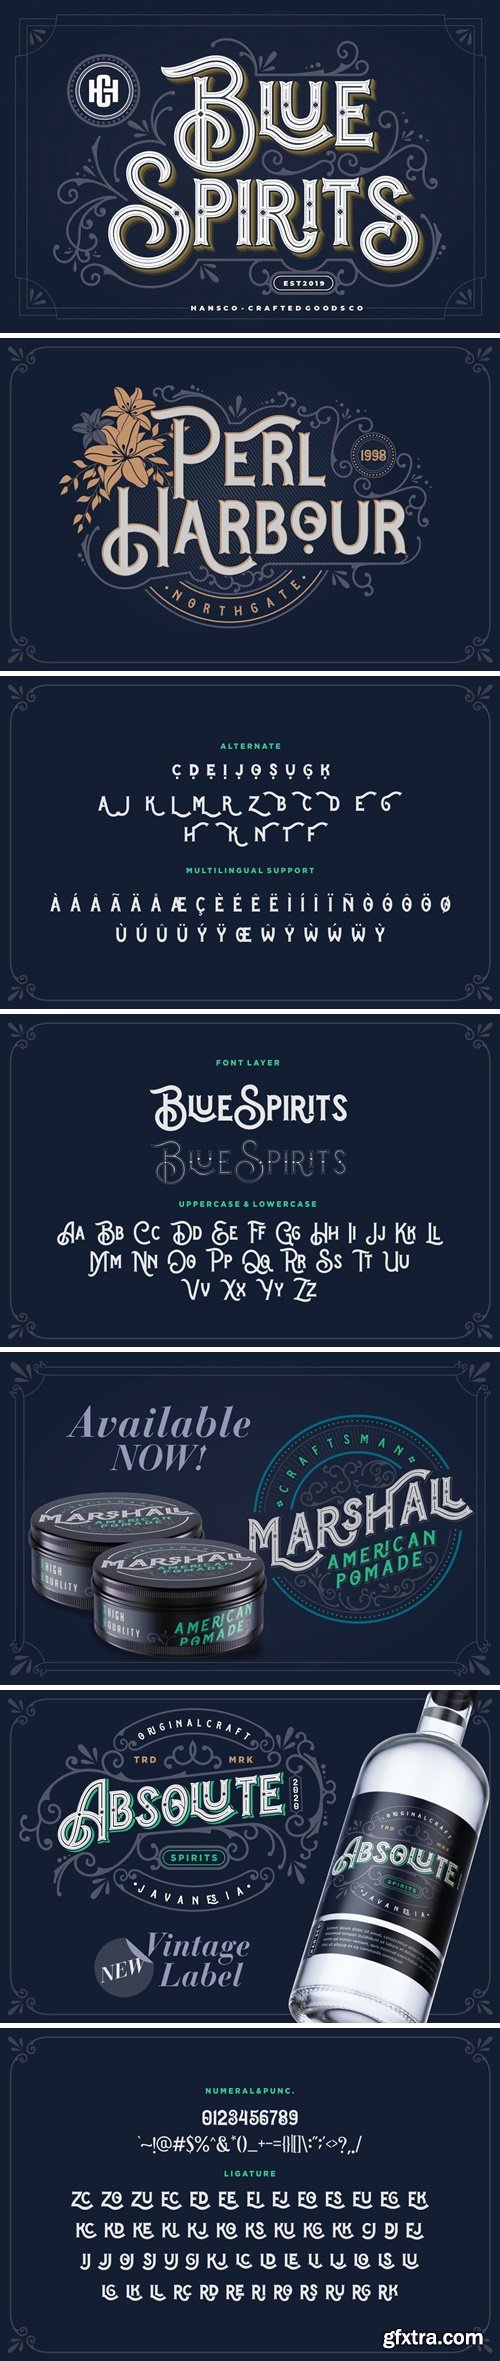 Blue Spirits Font